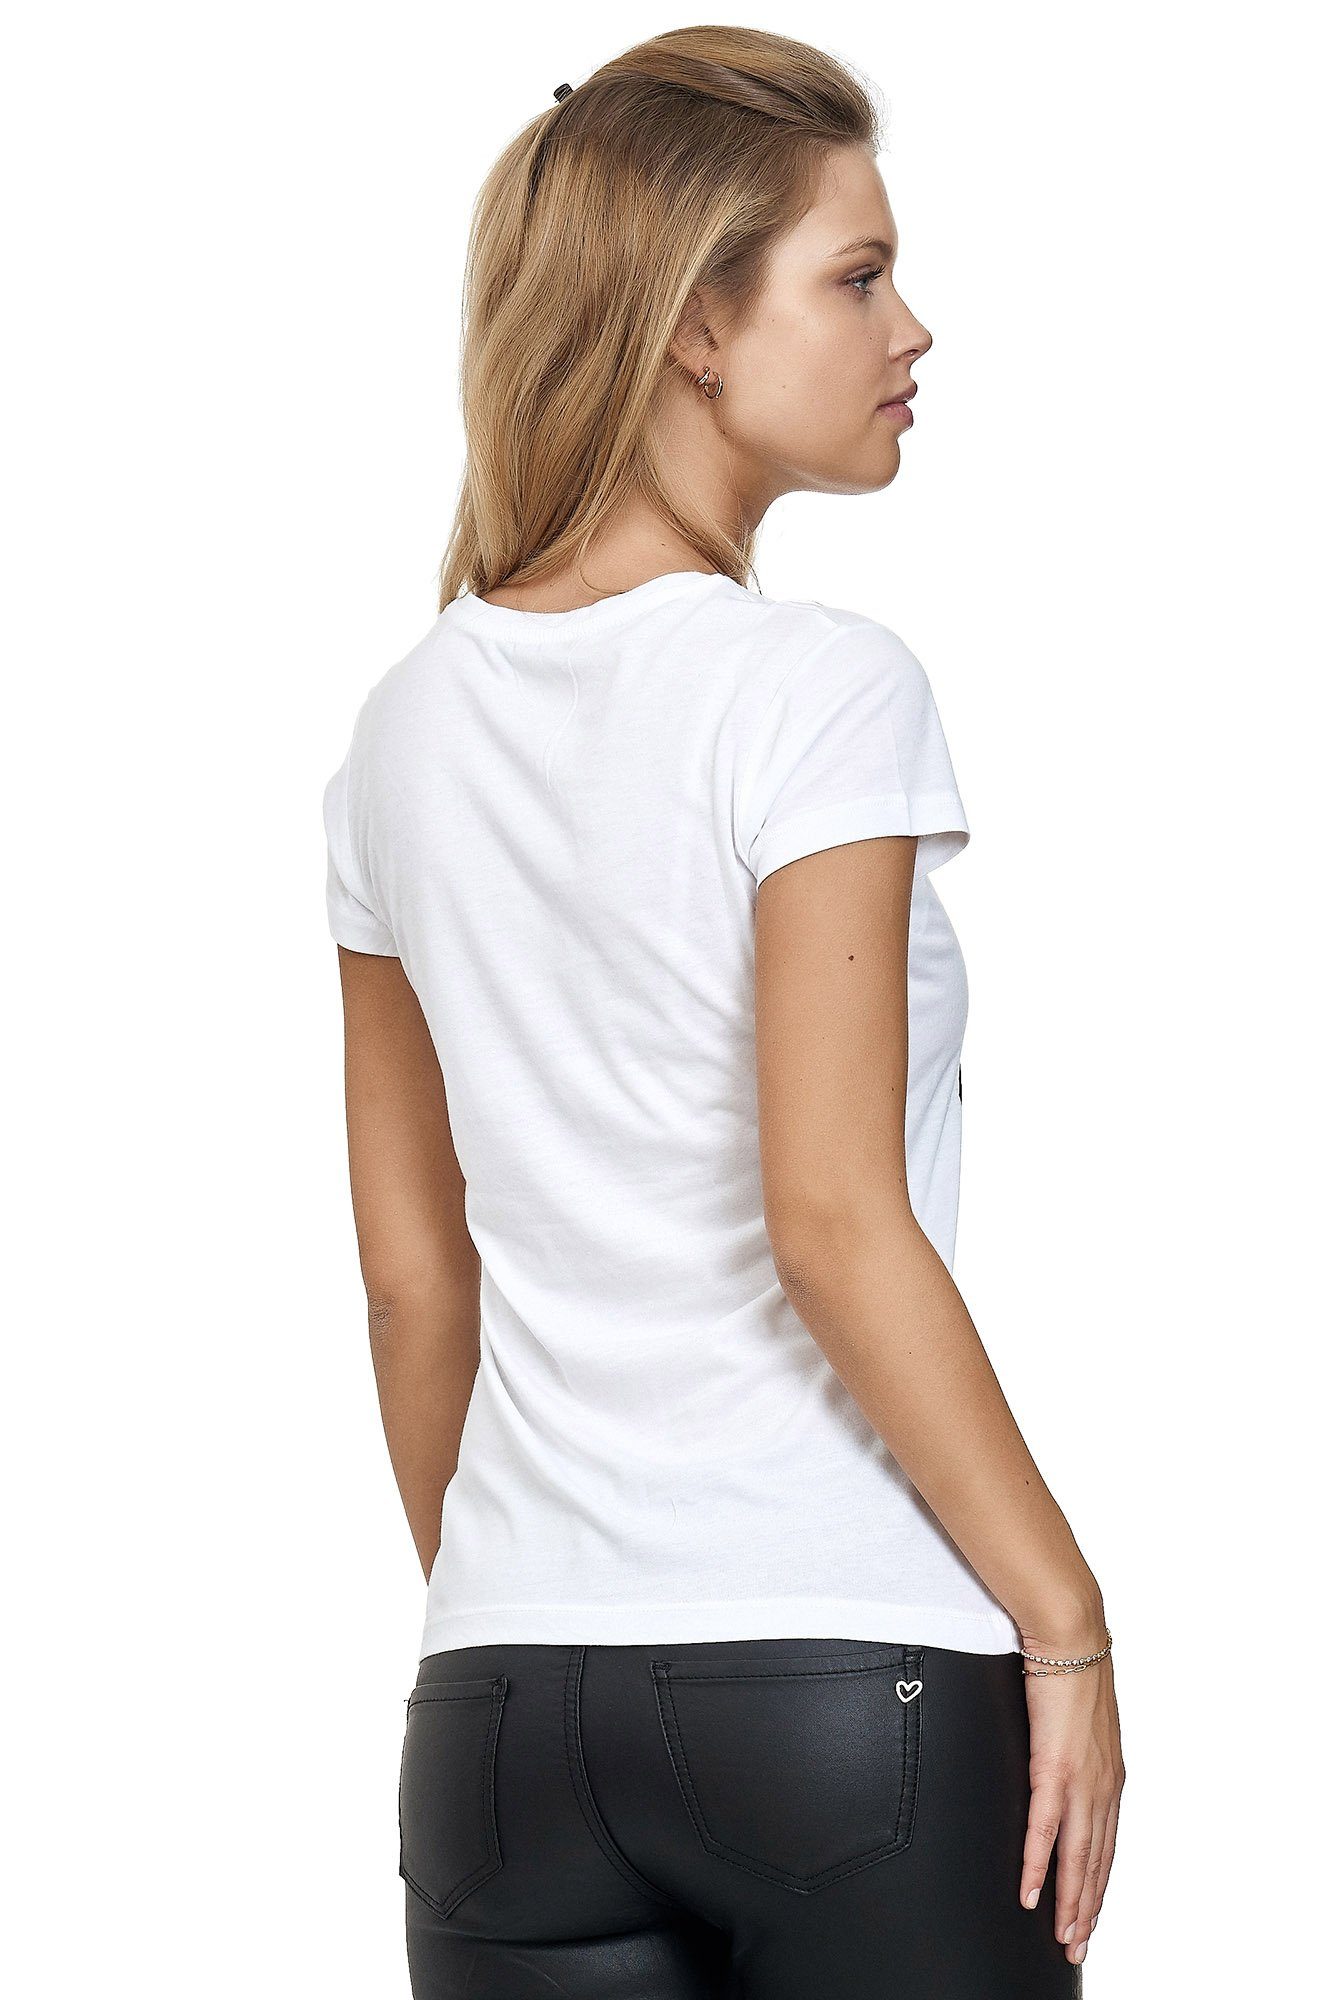 Decay T-Shirt mit weiß glänzendem Frontprint